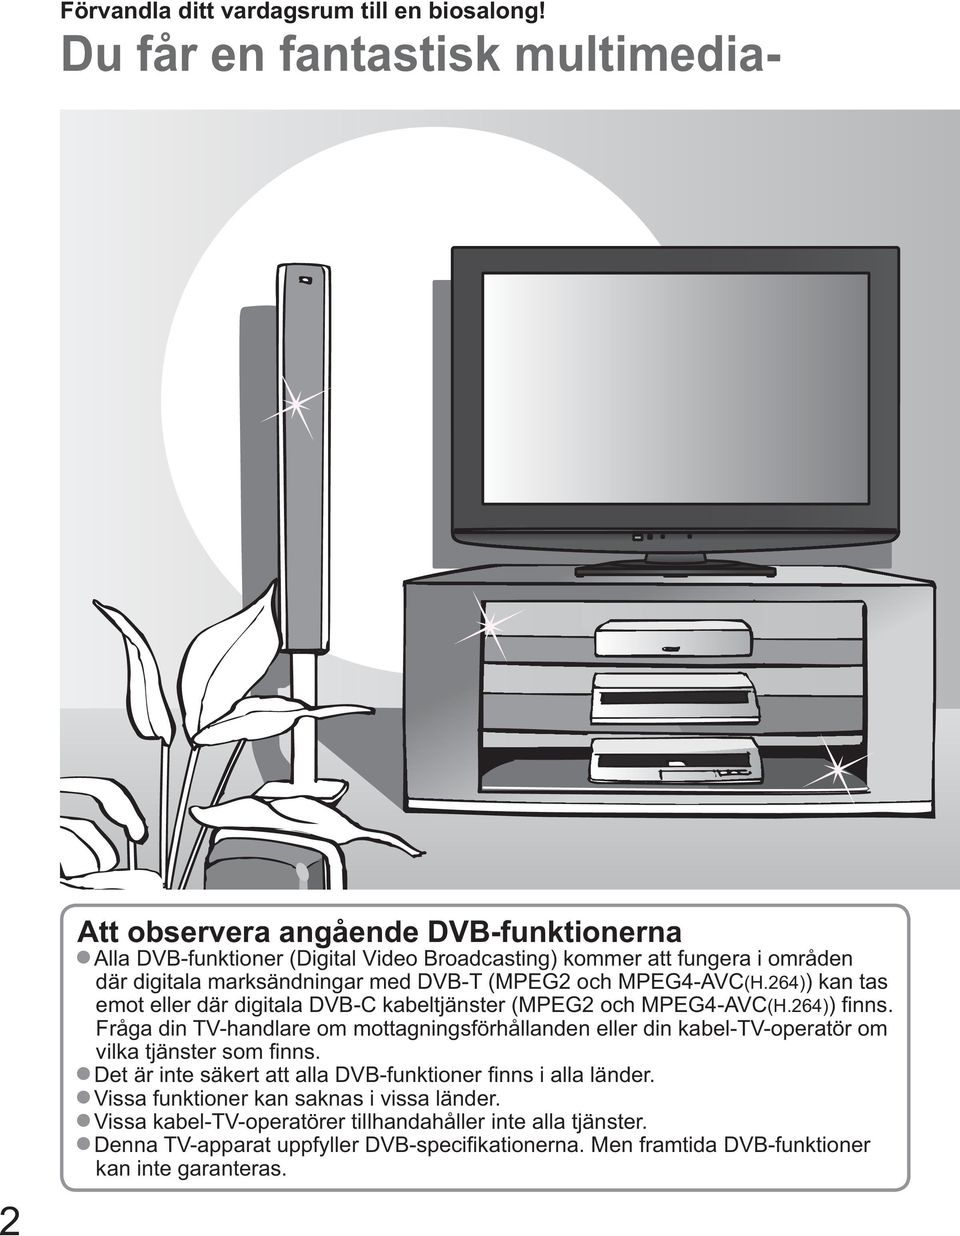 med DVB-T (MPEG2 och MPEG4-AVC(H.264)) kan tas emot eller där digitala DVB-C kabeltjänster (MPEG2 och MPEG4-AVC(H.264)) finns.